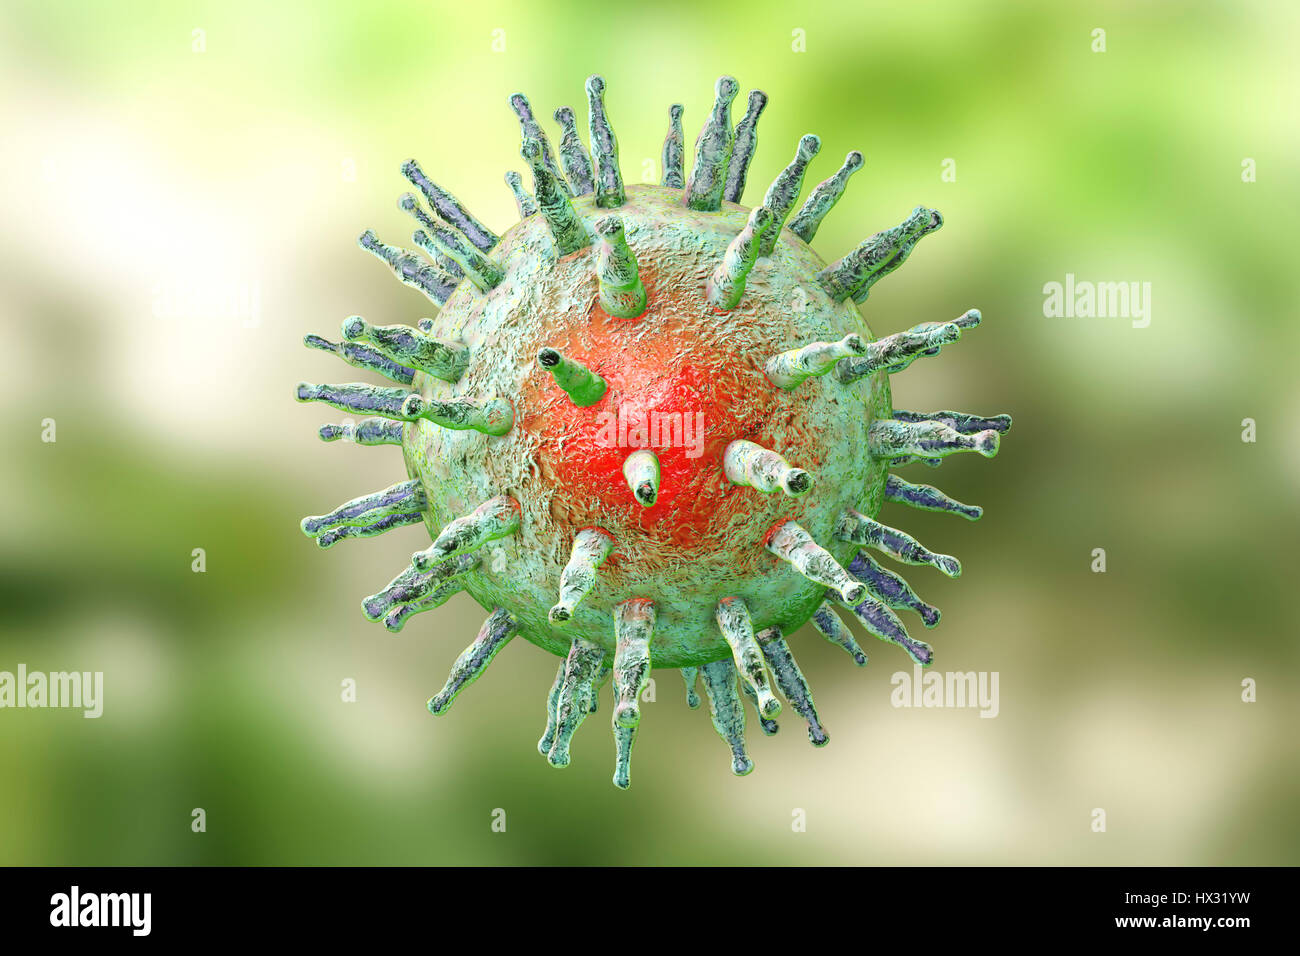 Le virus d'Epstein-Barr (EBV) destruction, ordinateur illustration. Image conceptuelle pour le traitement et la prévention de l'infection EBV. EBV, également connu sous le nom de virus de l'herpès humain 4 1 8, est de l'herpès virus qui infecte les humains. Il est mieux connu comme étant la cause de la fièvre glandulaire (mononucléose infectieuse), mais est également associée à certaines formes de cancer, y compris le lymphome de Burkitt. Dans les deux infections, le virus infecte l'un type de globules blancs, lymphocytes B. L'infection à EBV est courante et généralement sans danger ; d'autres facteurs potentialisent le développement d'affections plus graves. Banque D'Images